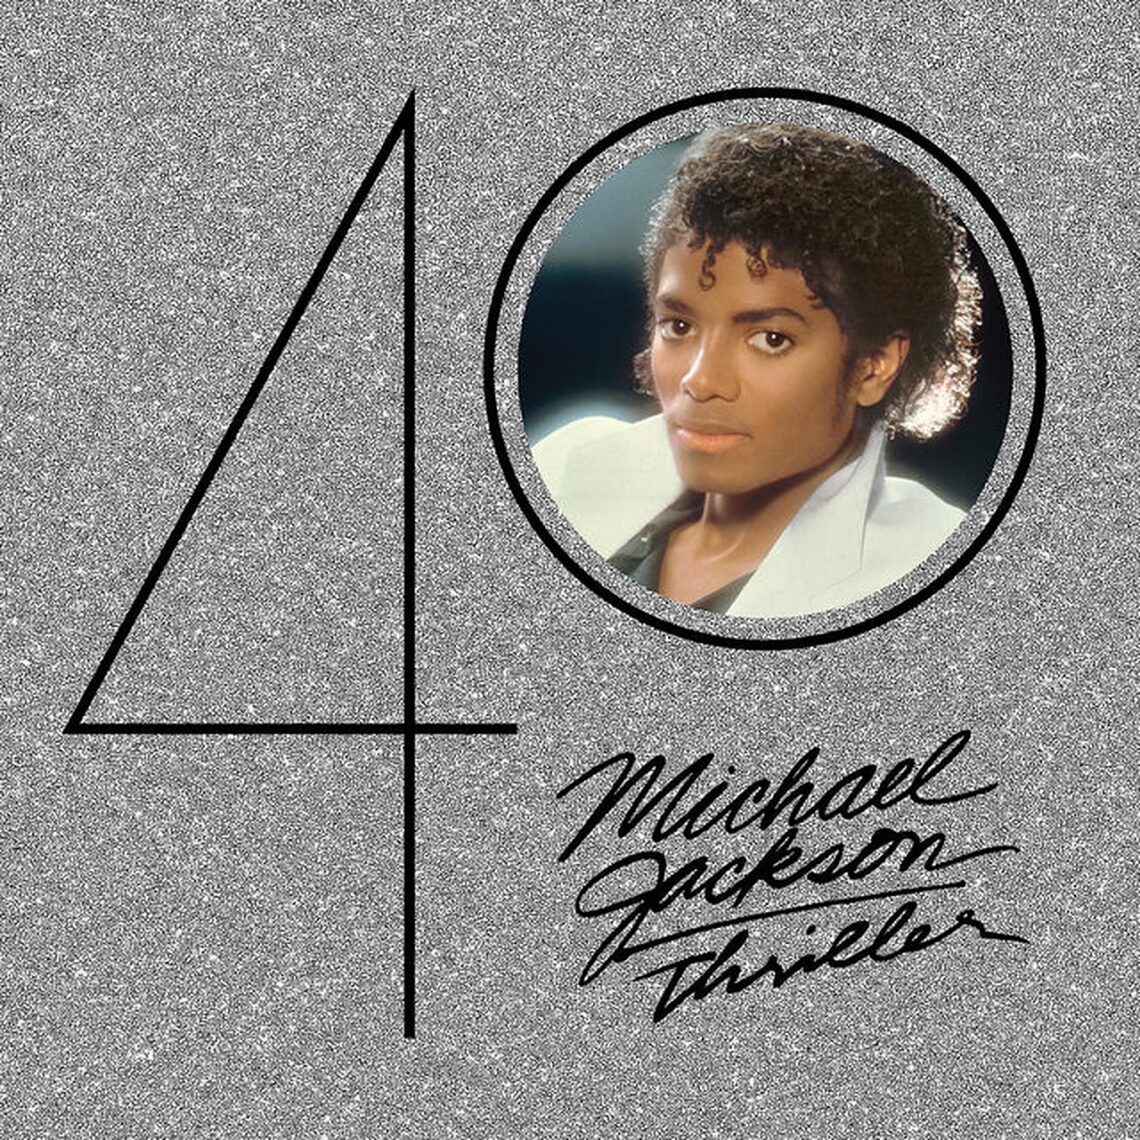 Το Thriller του Michael Jackson (ξανά!) στο Top 10 του Billboard 200